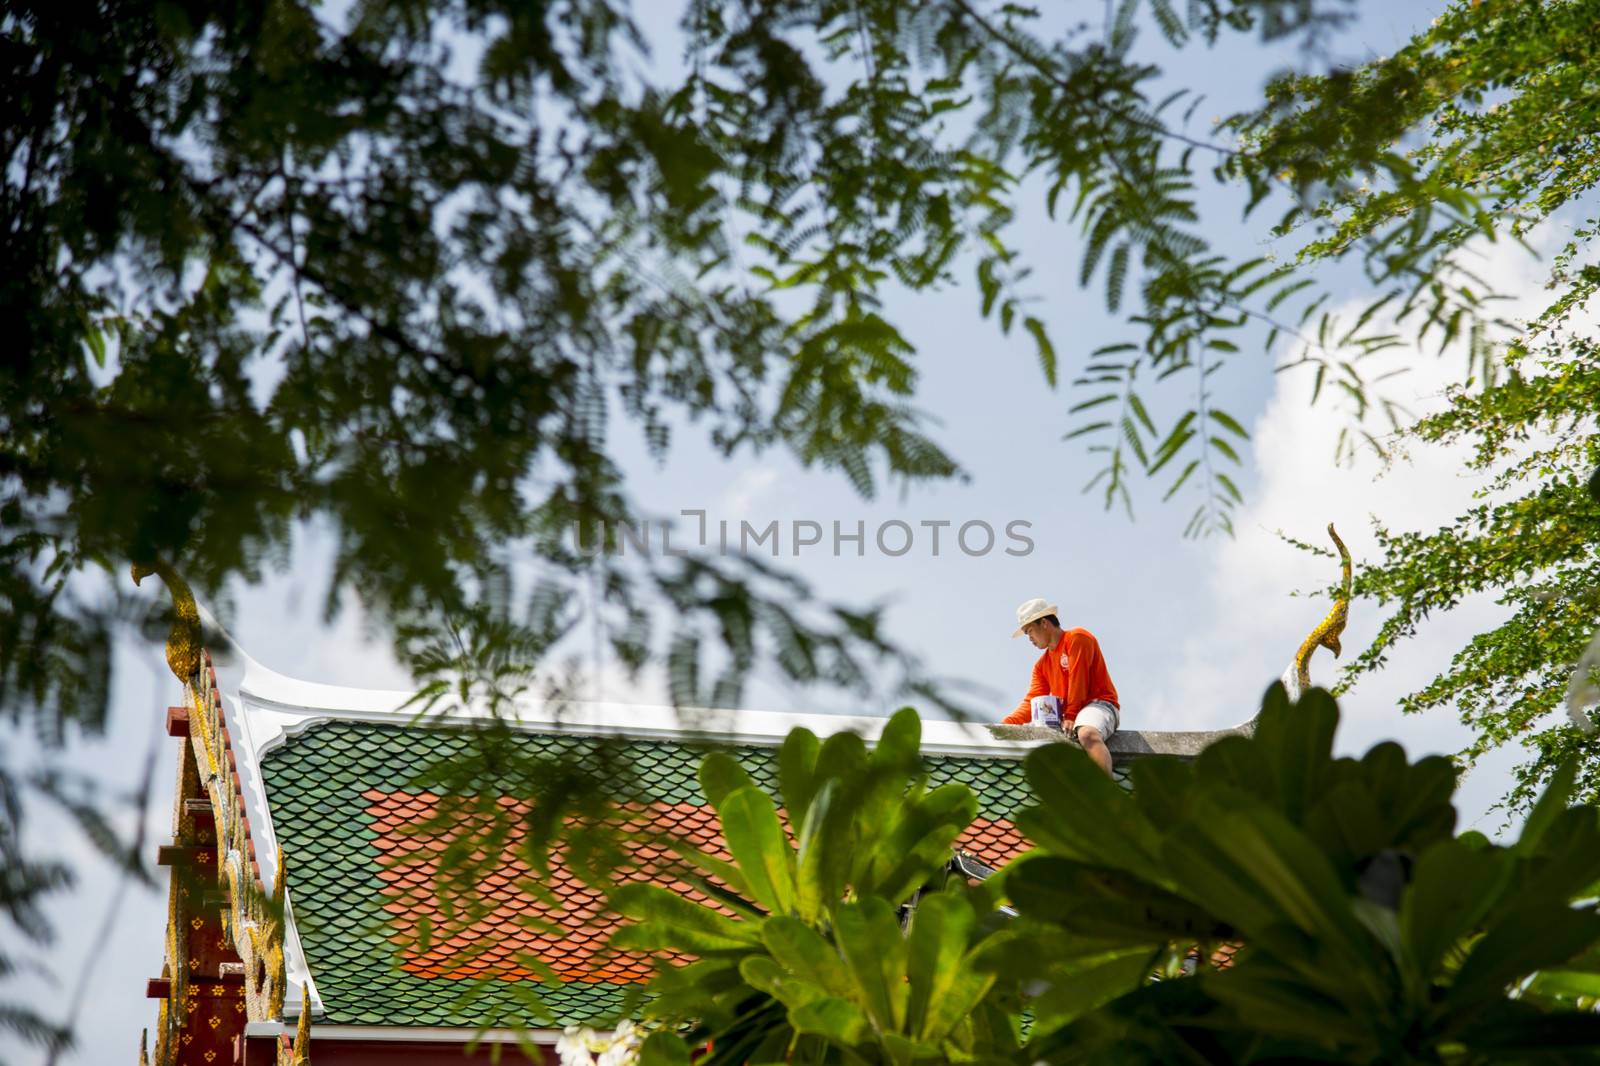 A Man repair roof of Temple by gjeerawut